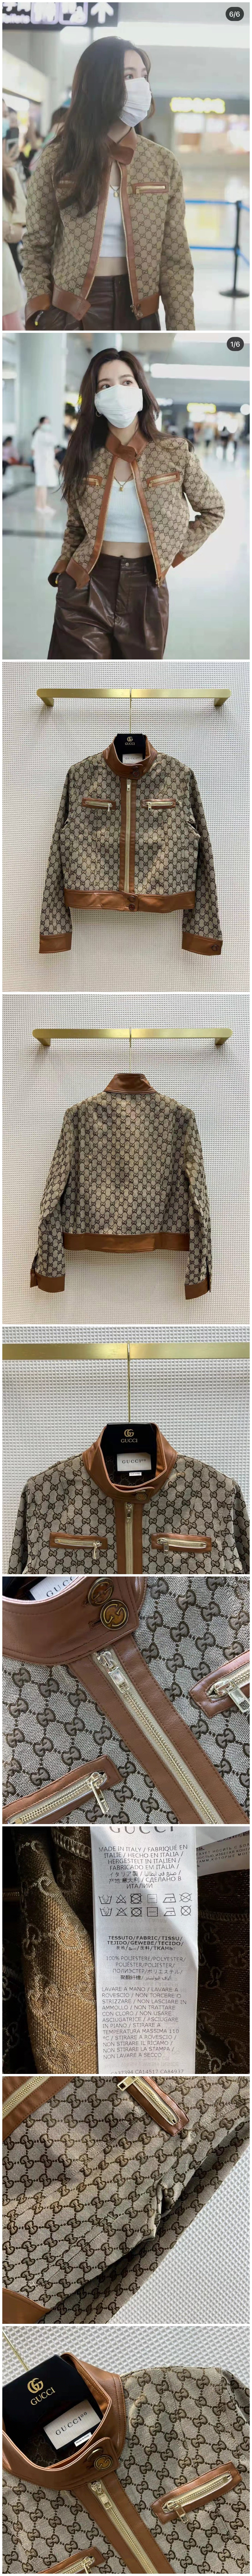 Gucci  雙G提花系列外套 整個設計復古感十足0